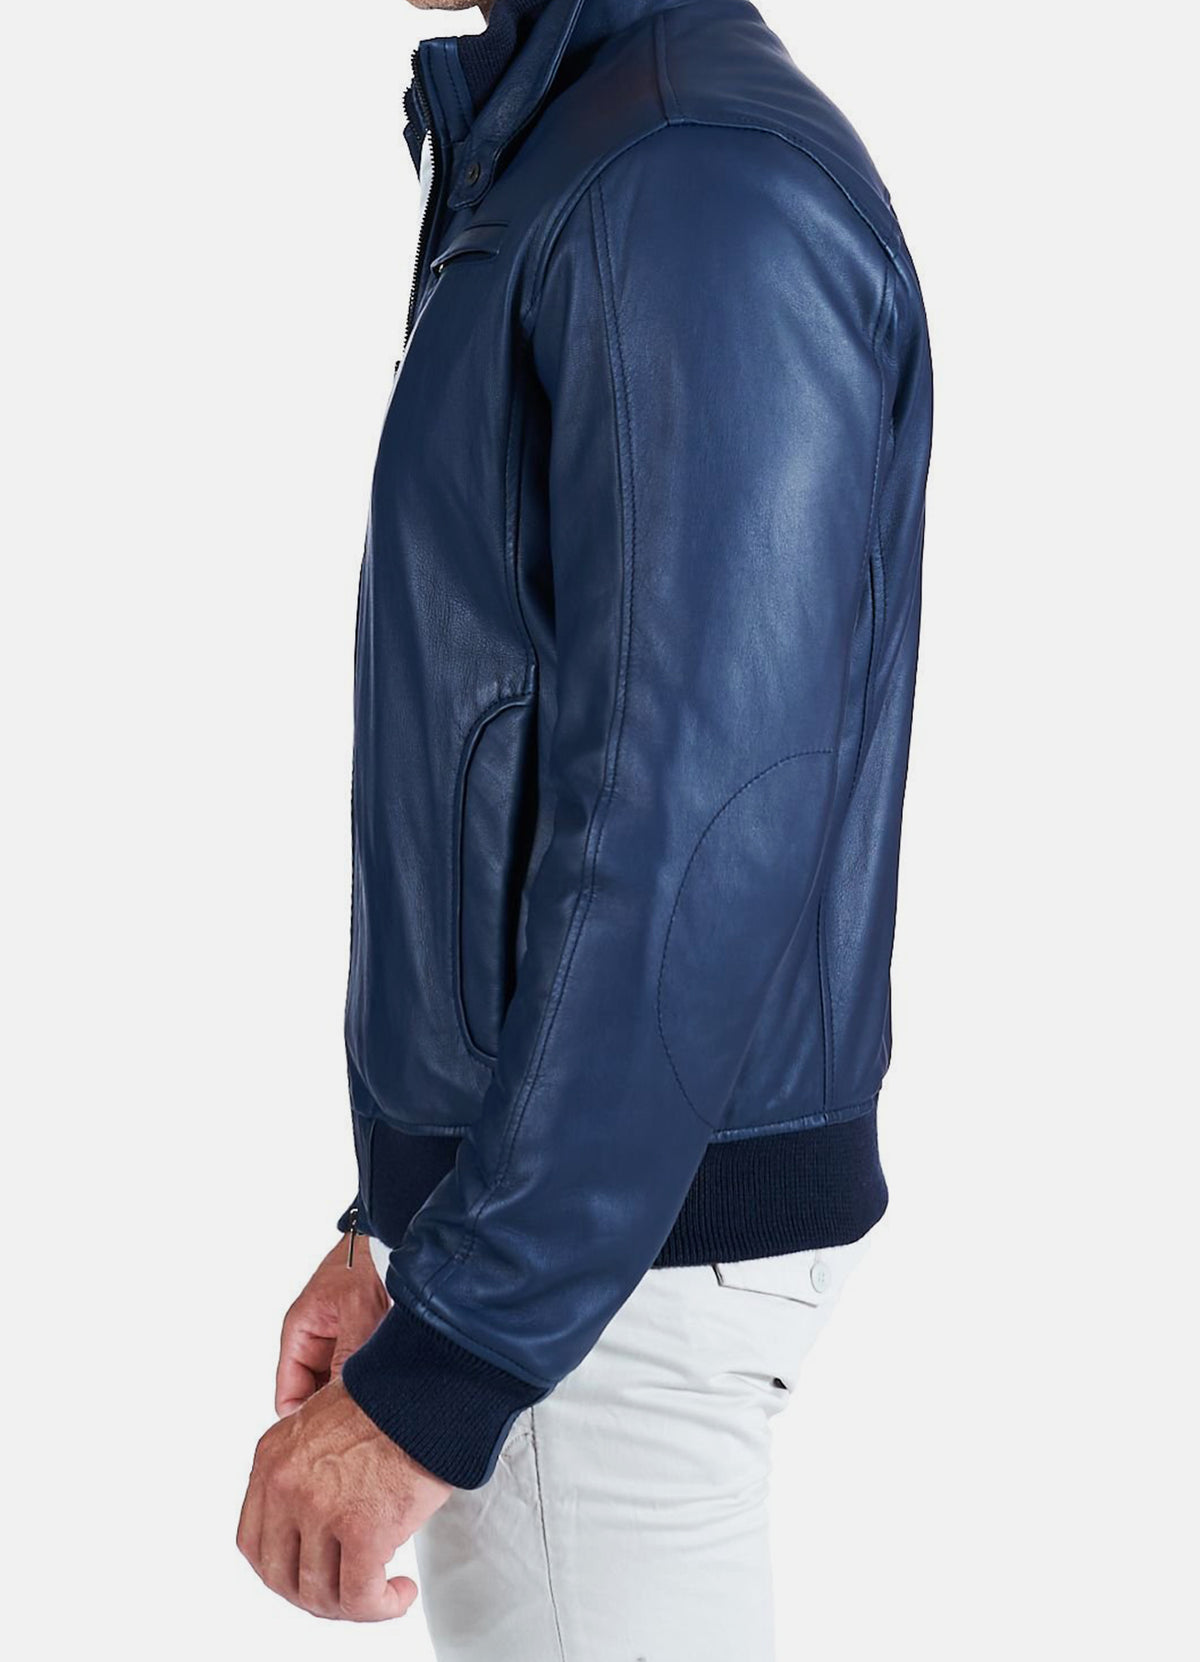 Mens Shiny Blue Bomber Leather Jacket | Elite Jacket